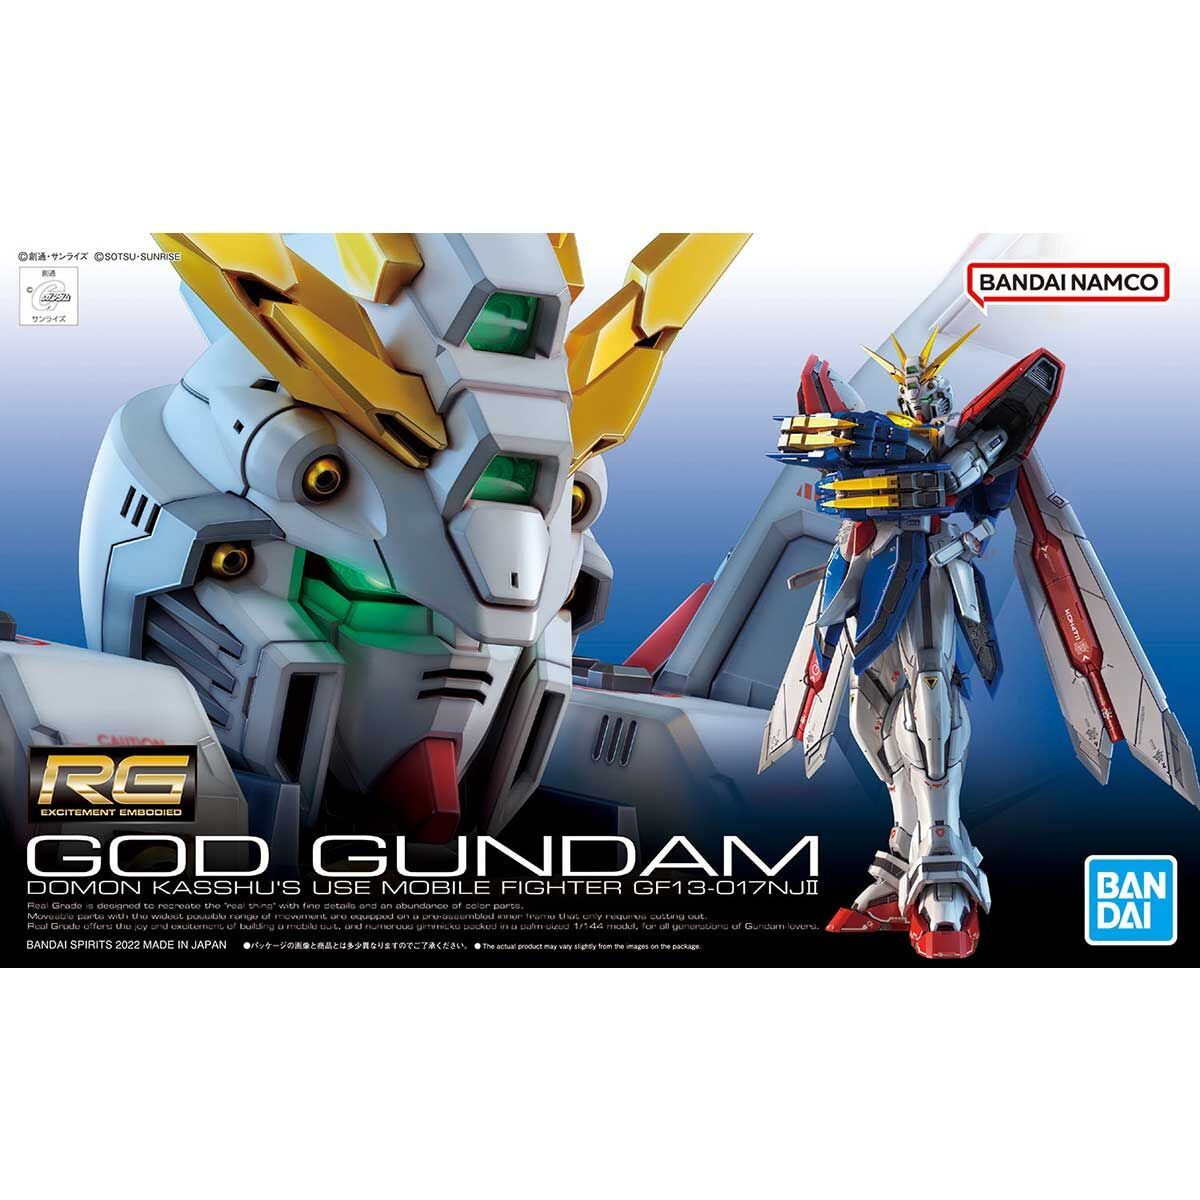 Bandai 1/144 Scale RG God Gundam Model Kit